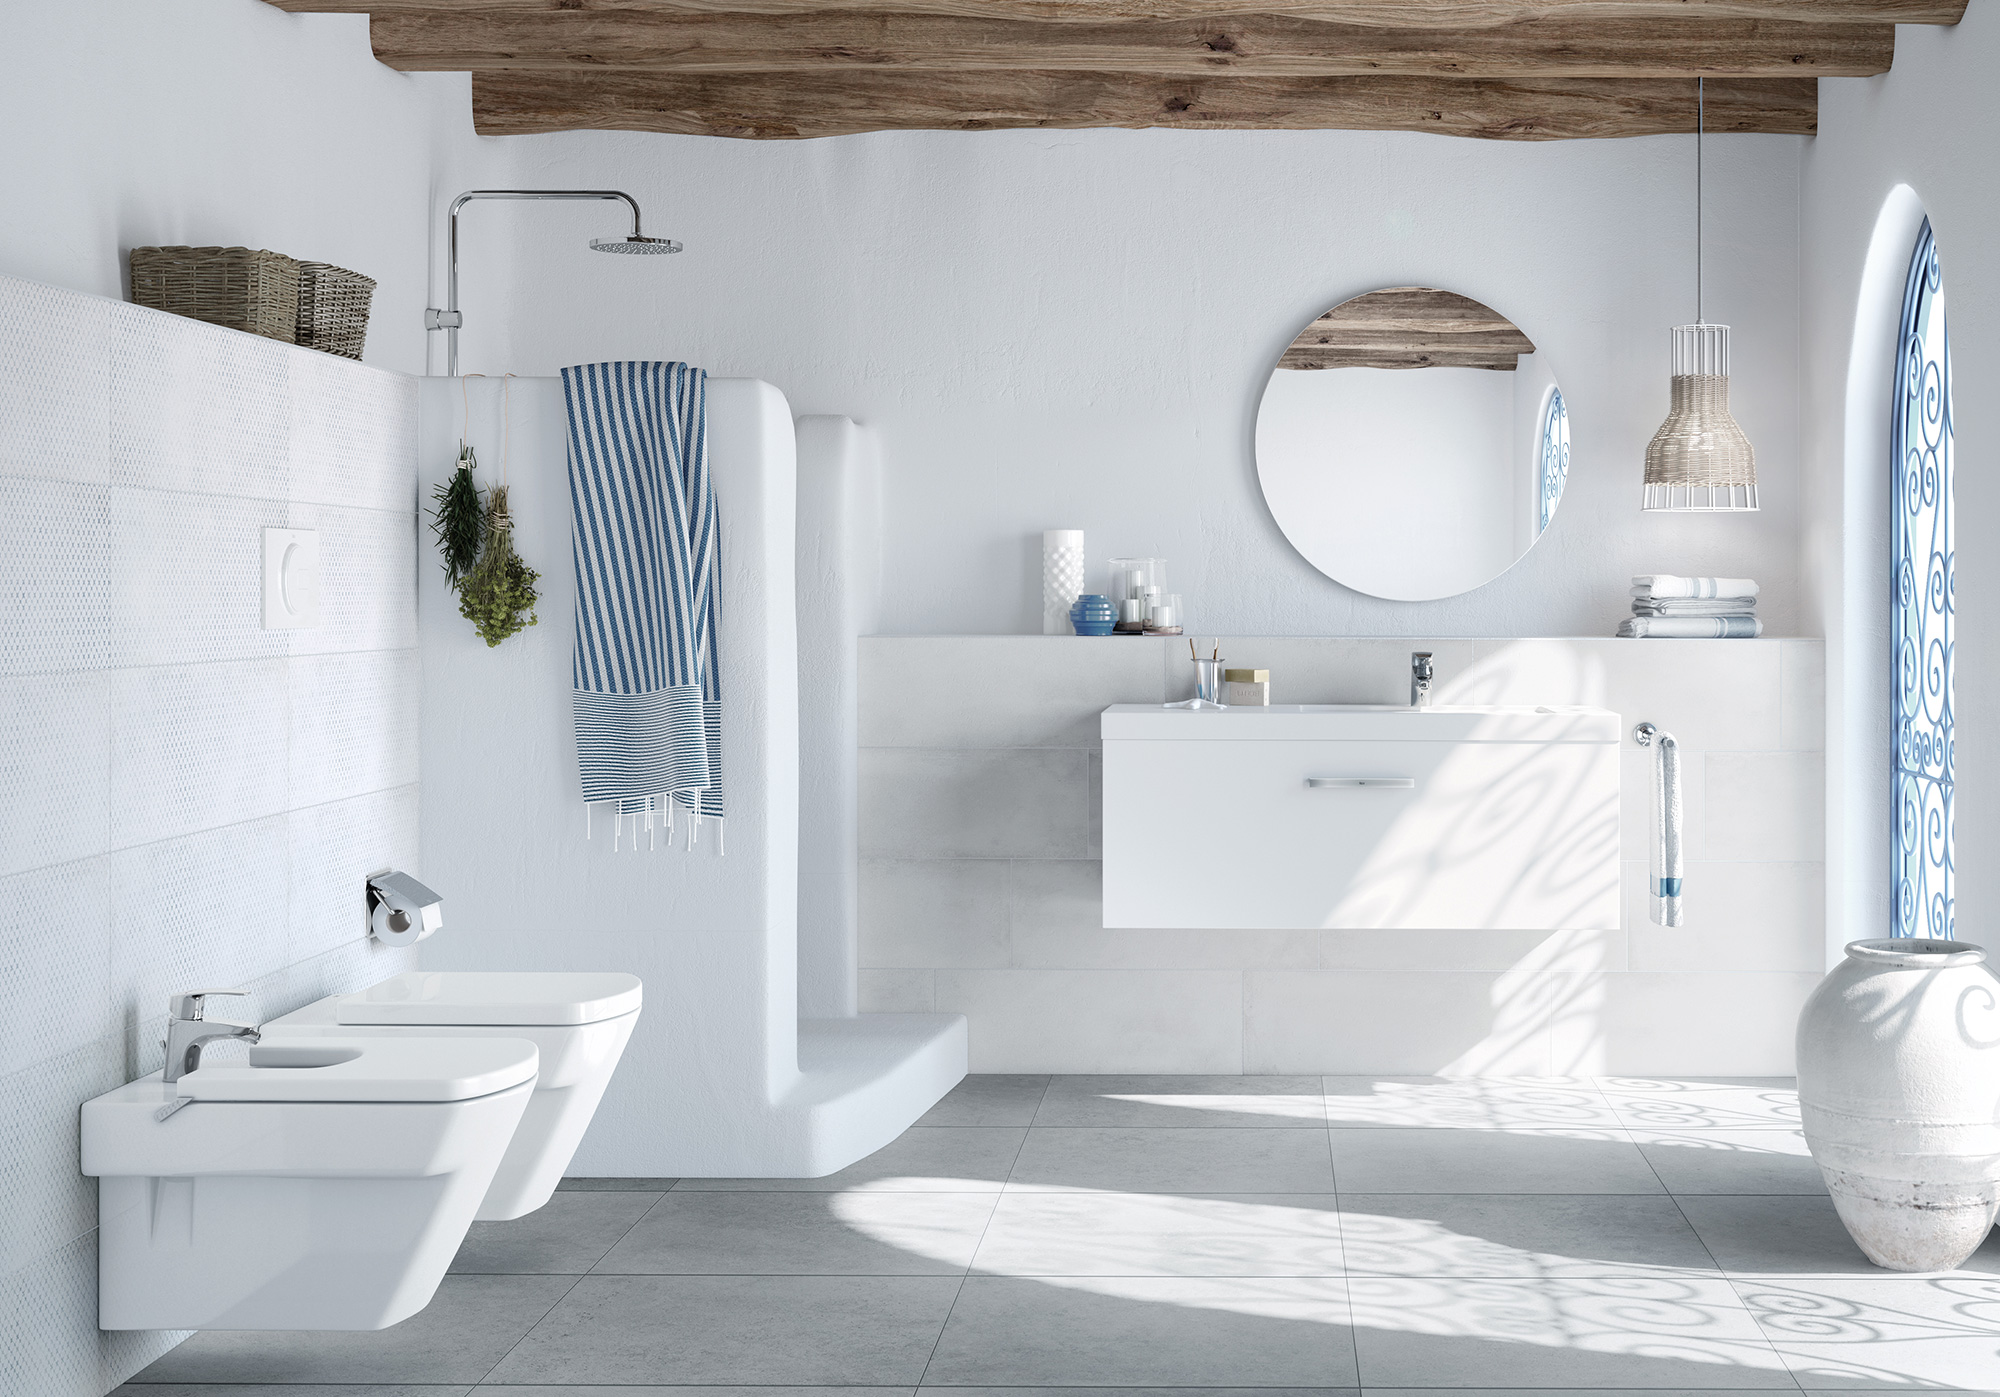 Badezimmer mediterran: sehr hell, weiße Farben